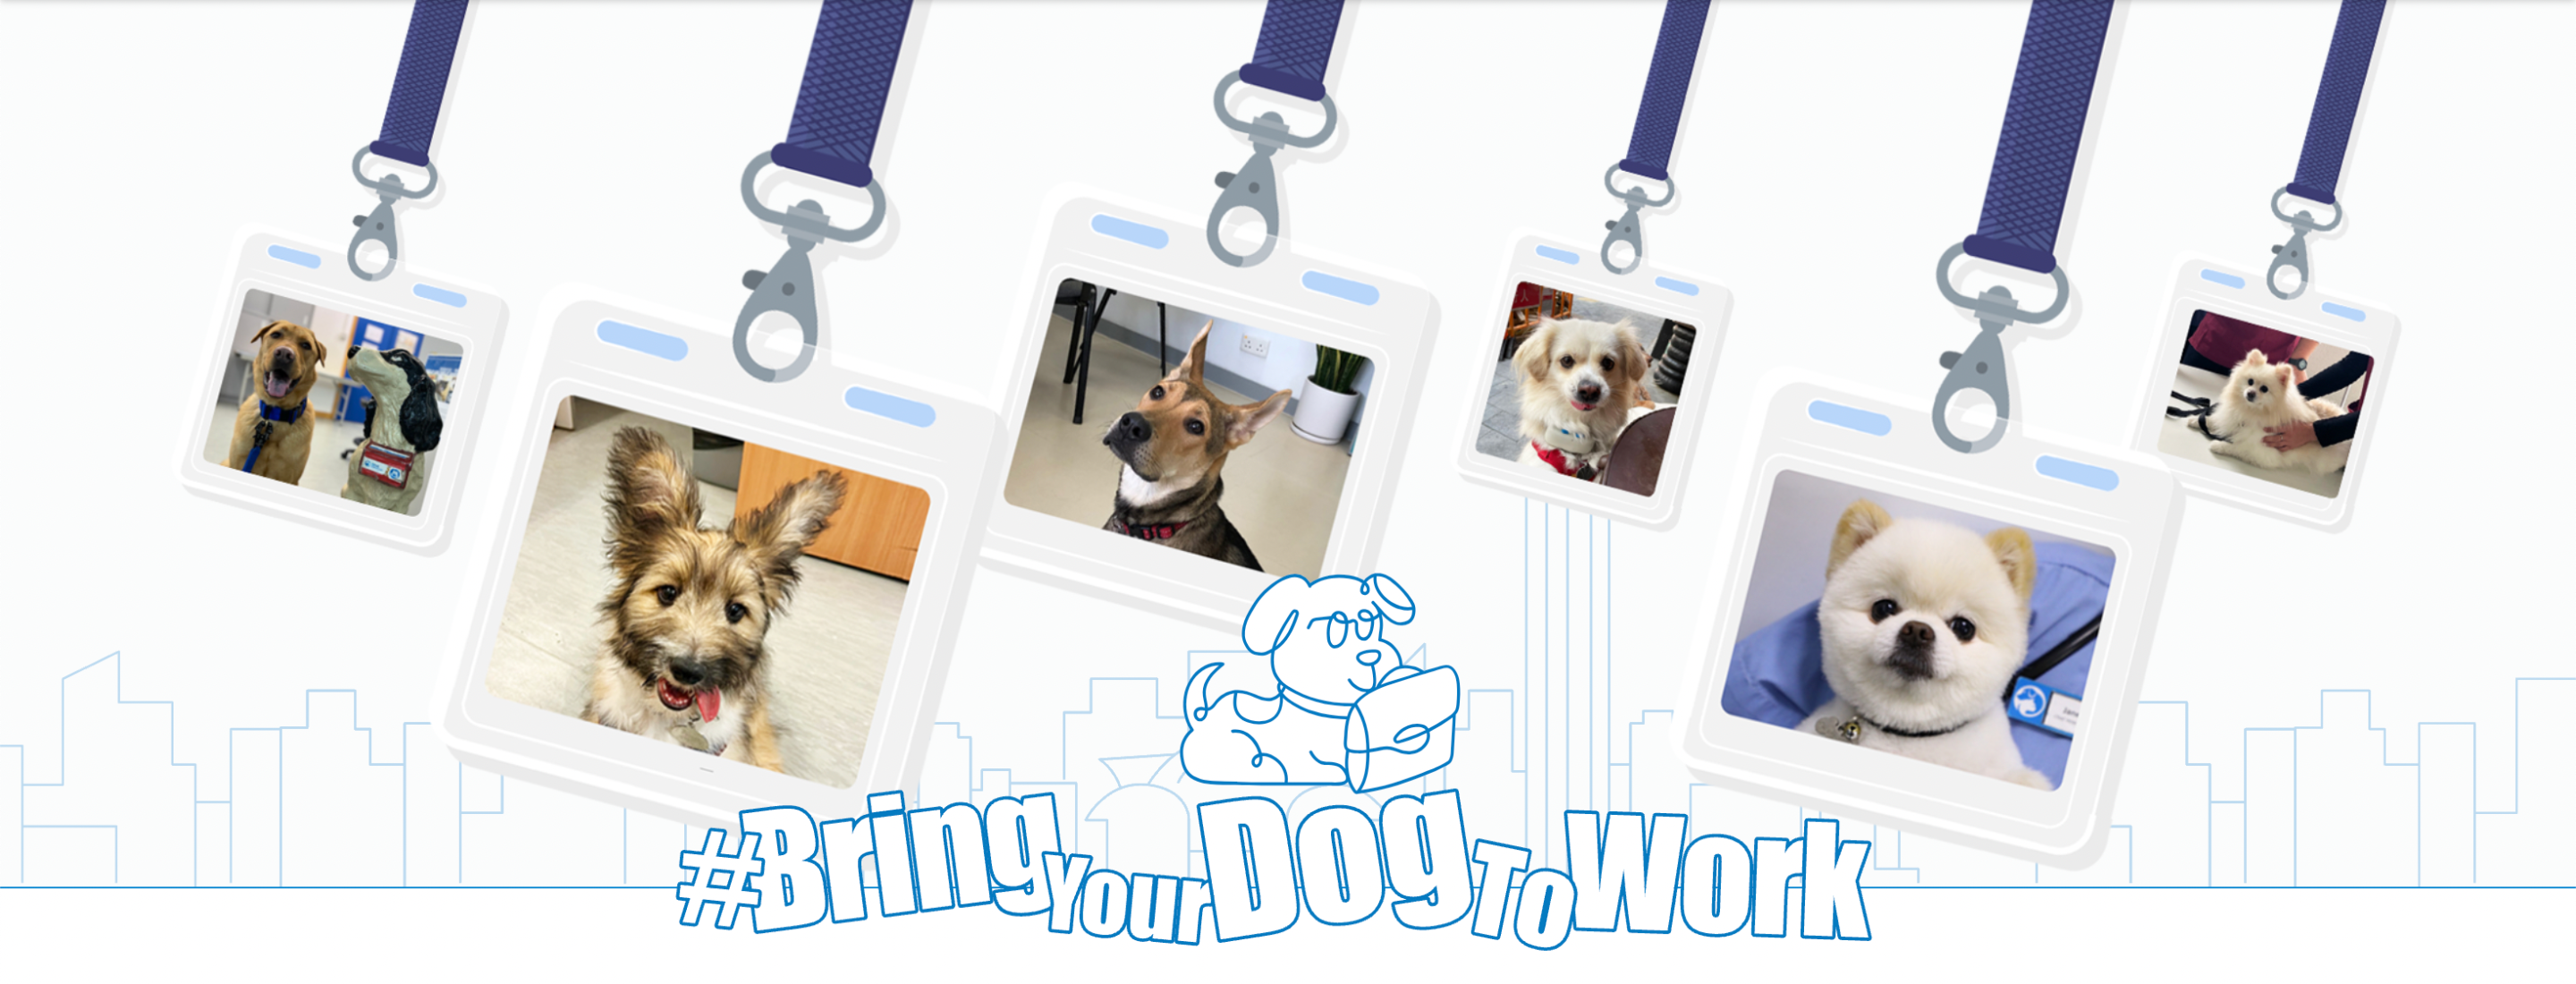 香港愛護動物協會推動「帶狗狗上班」 在香港推動狗狗友善的辦公室文化